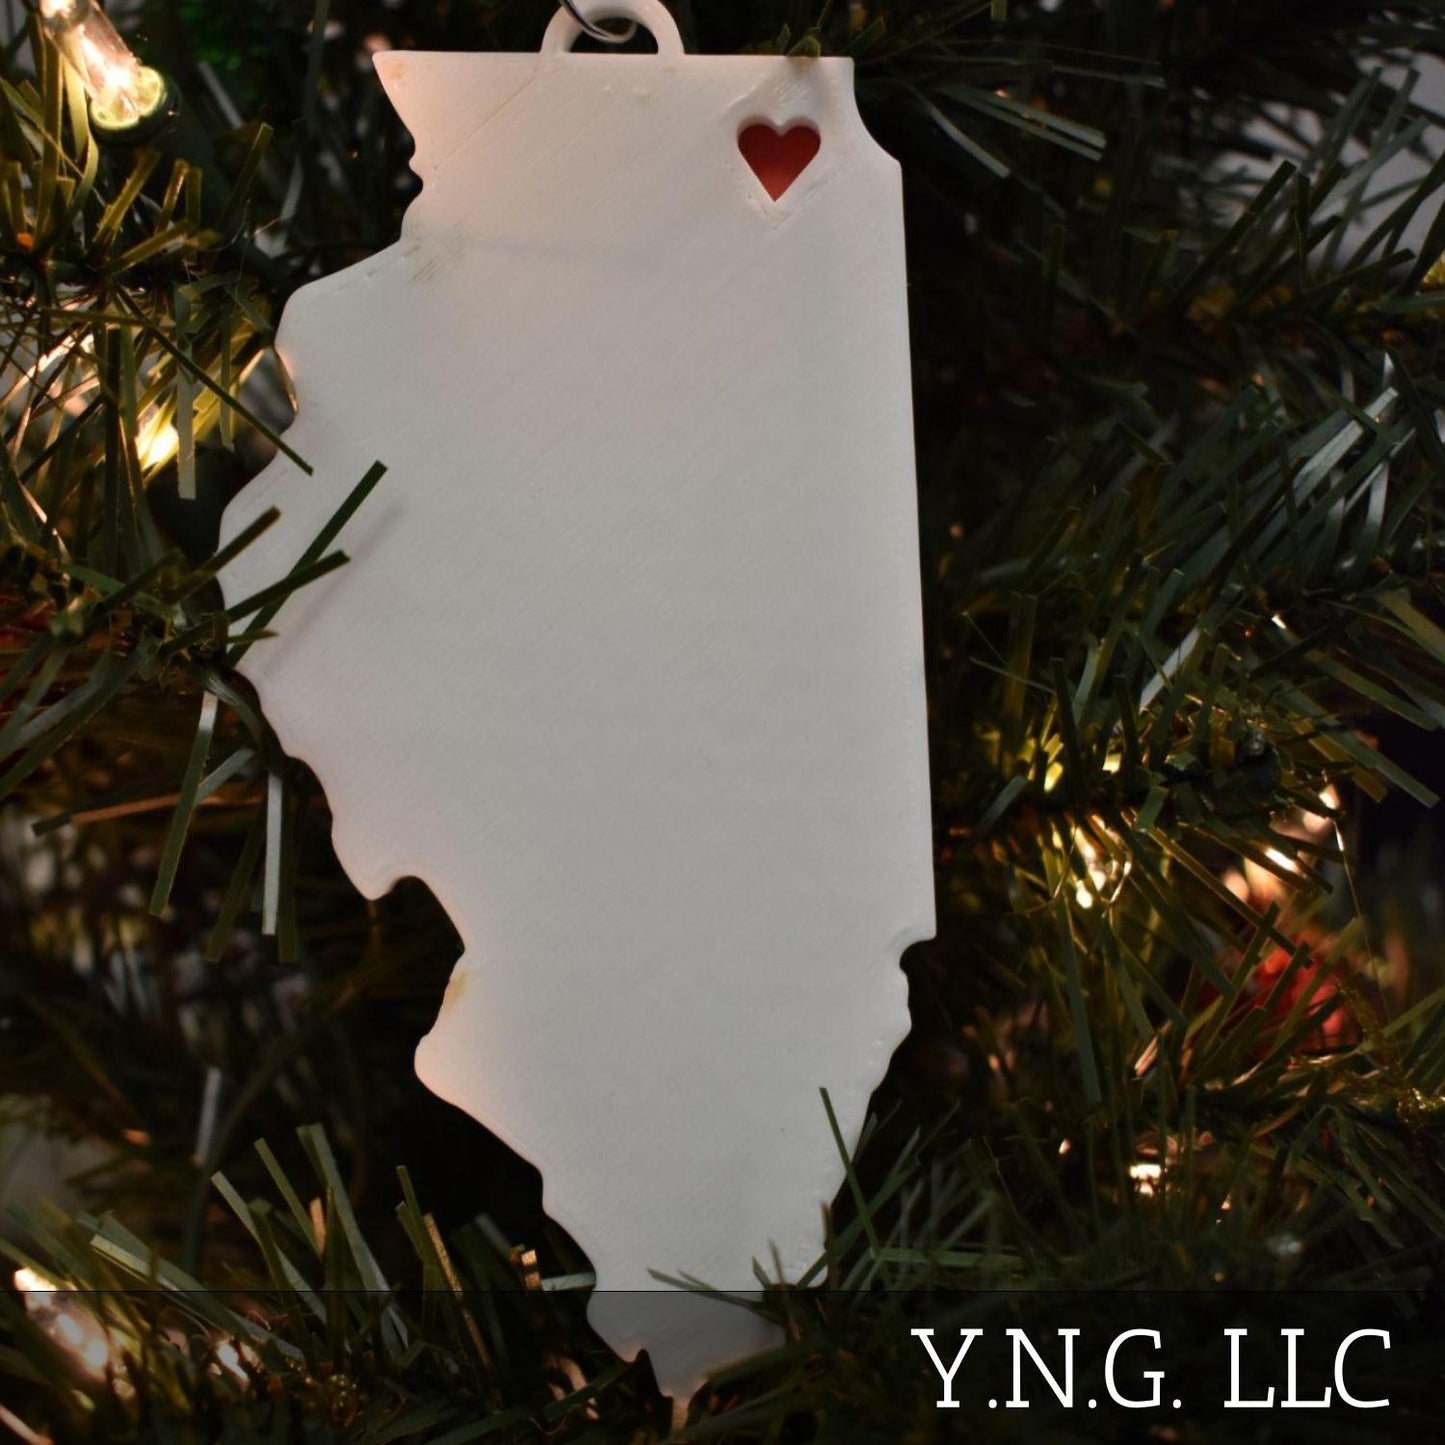 Illinois State Chicago Heart Ornament Christmas Decor USA PR244-IL